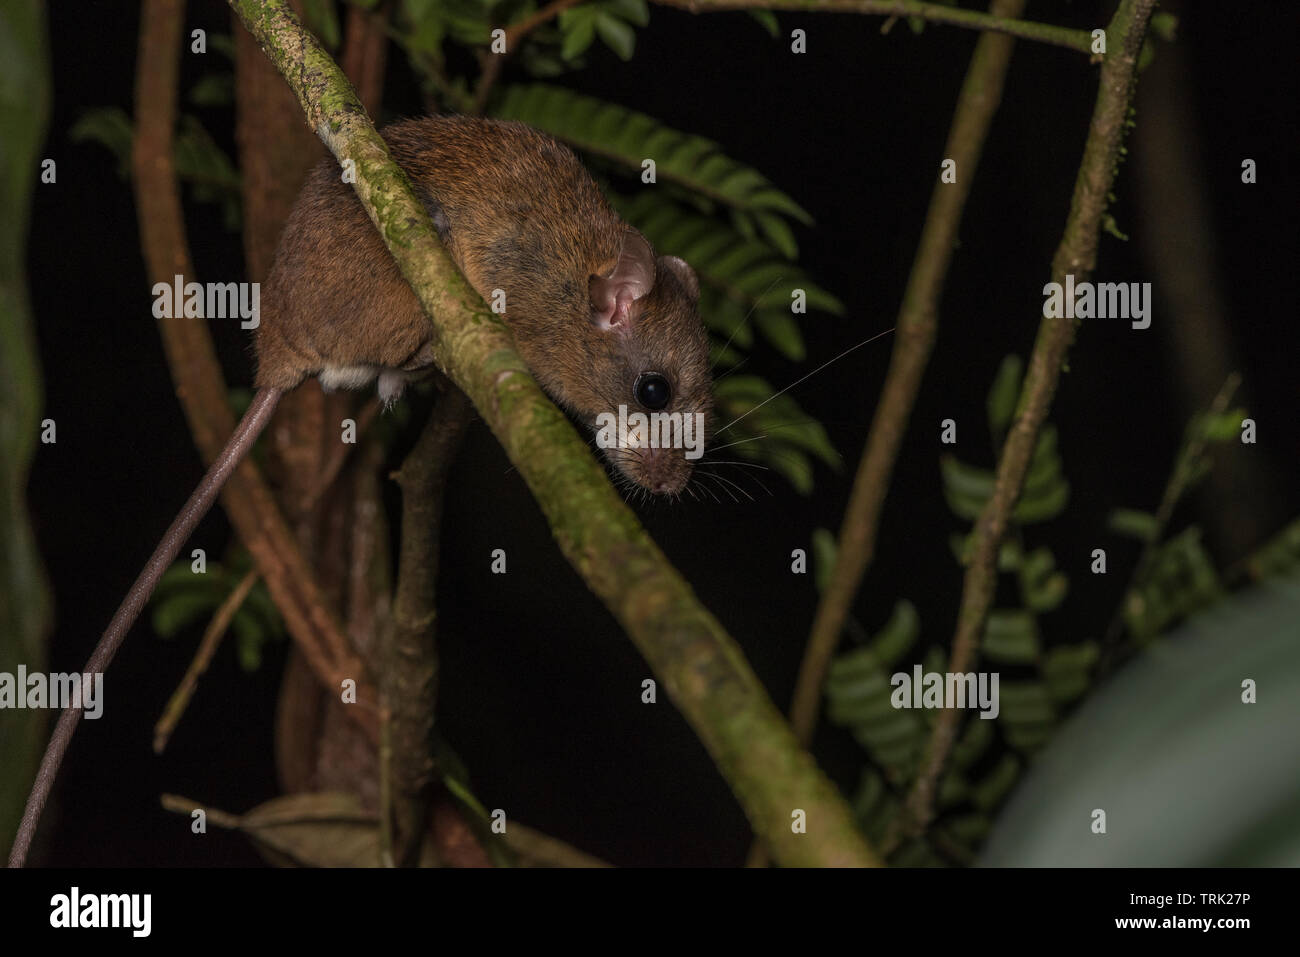 Eine kletternde Maus (Oecomys sp) vom ecuadorianischen Amazonas Regenwald in Yasuni Nationalpark. Stockfoto